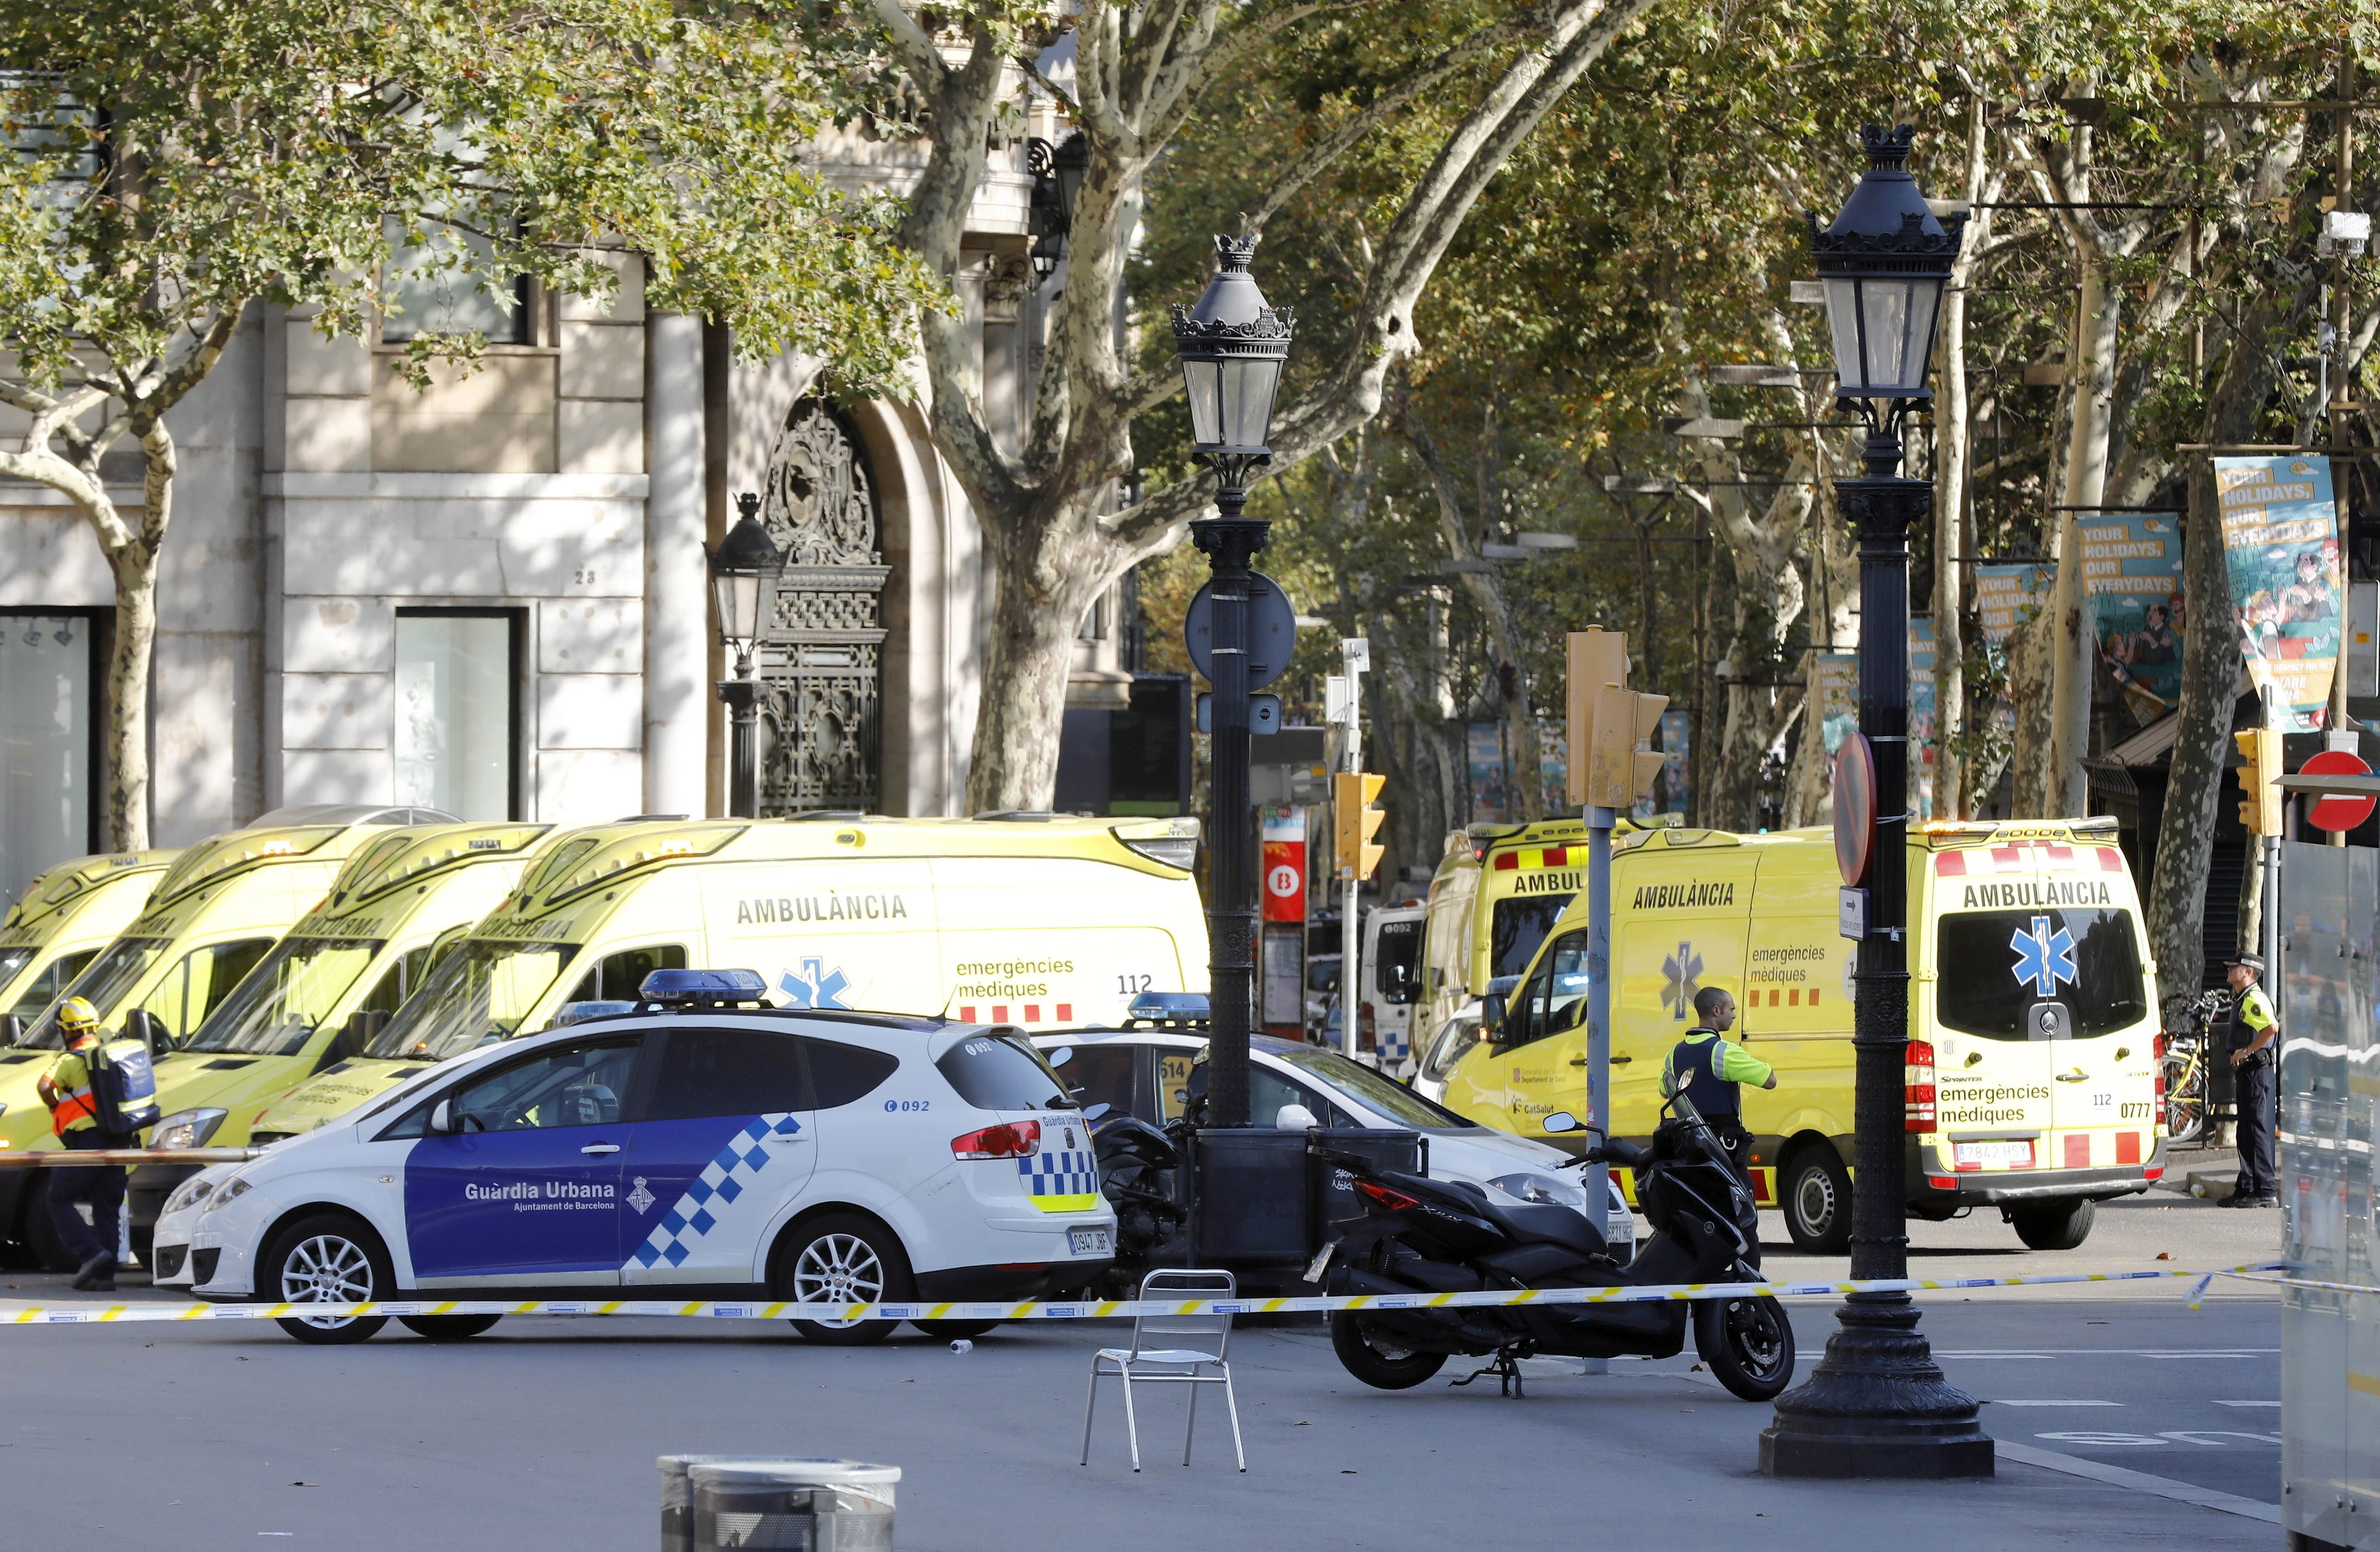 Policía confirma que el atropello de Barcelona es un atentado terrorista